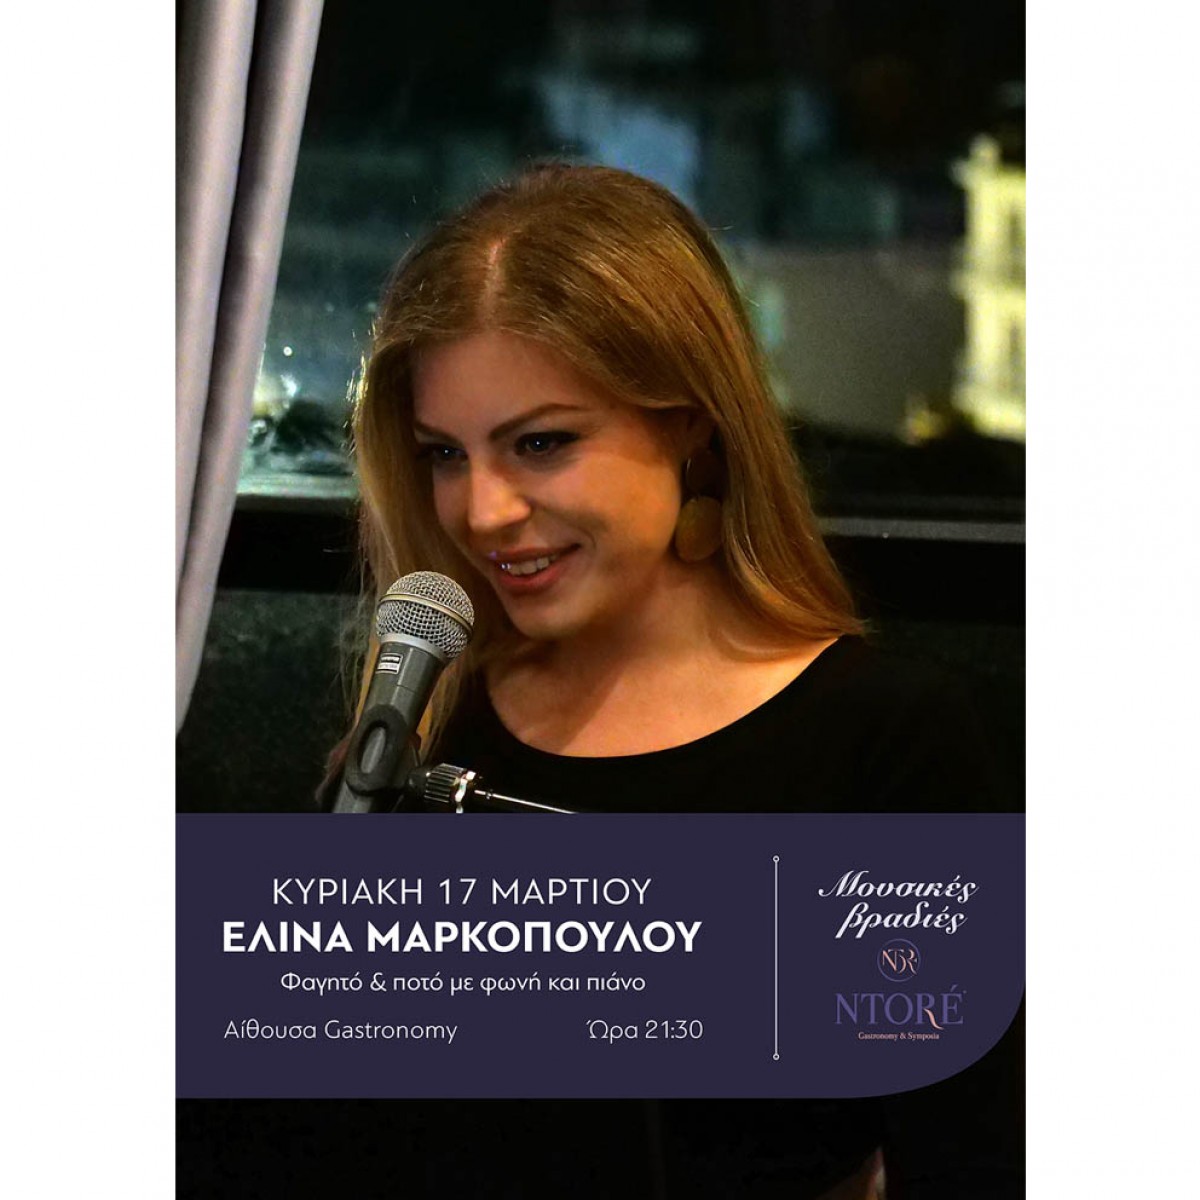 Φαγητό και ποτό με την Ελίνα Μαρκοπούλου στη φωνή και το πιάνο και την καλύτερη θέα της πόλης! Κυριακή 17 Μαρτίου, 21:30